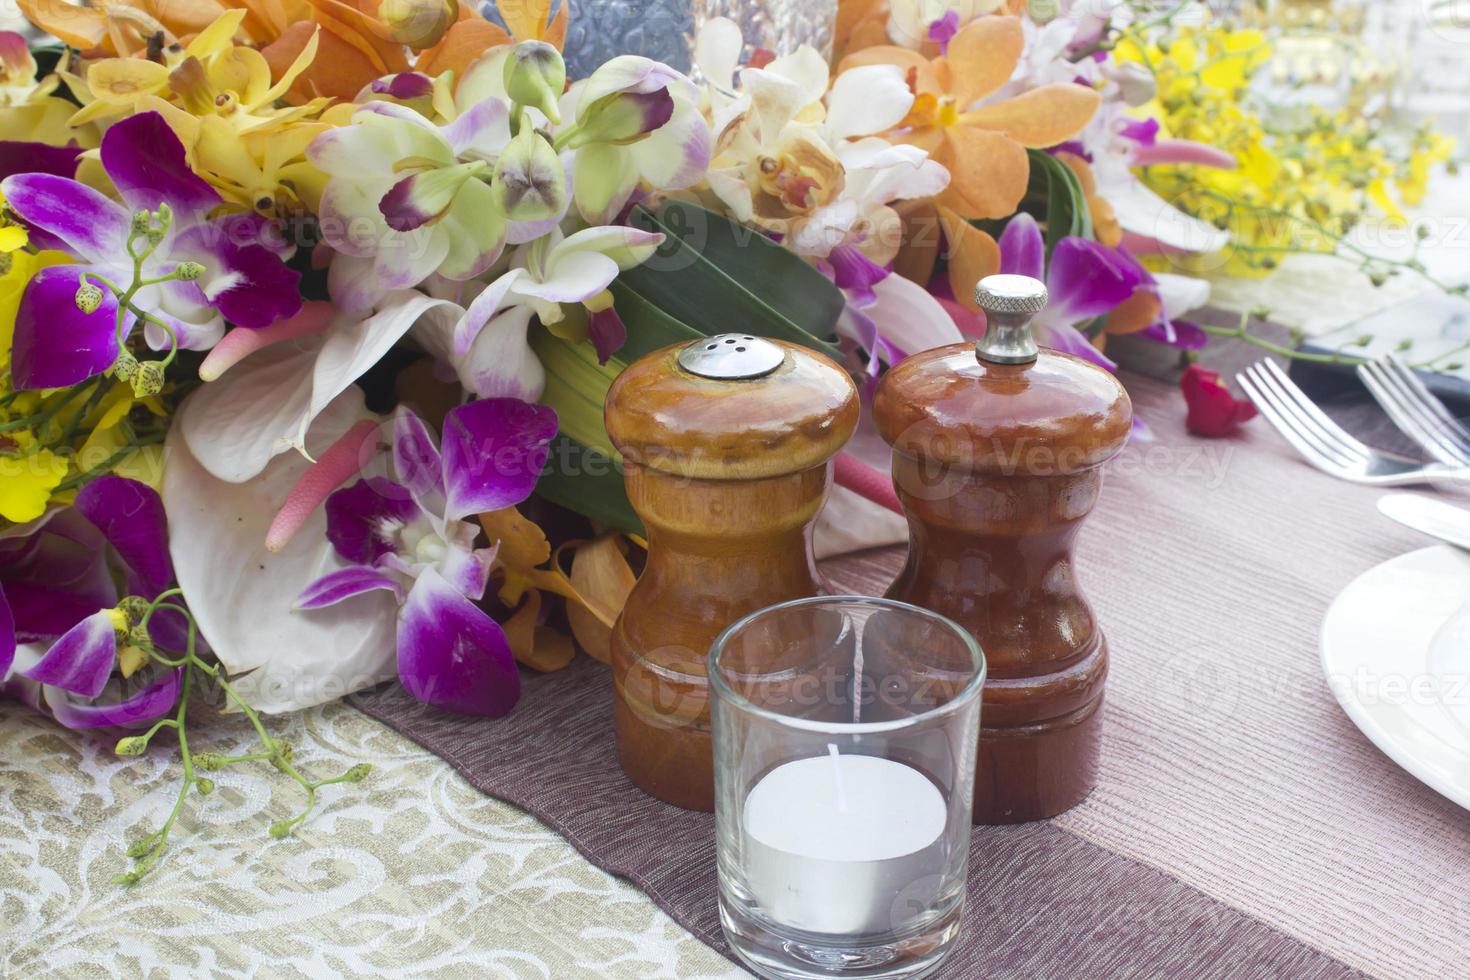 tarros, sal y pimienta en la cena de mesa con flores. foto